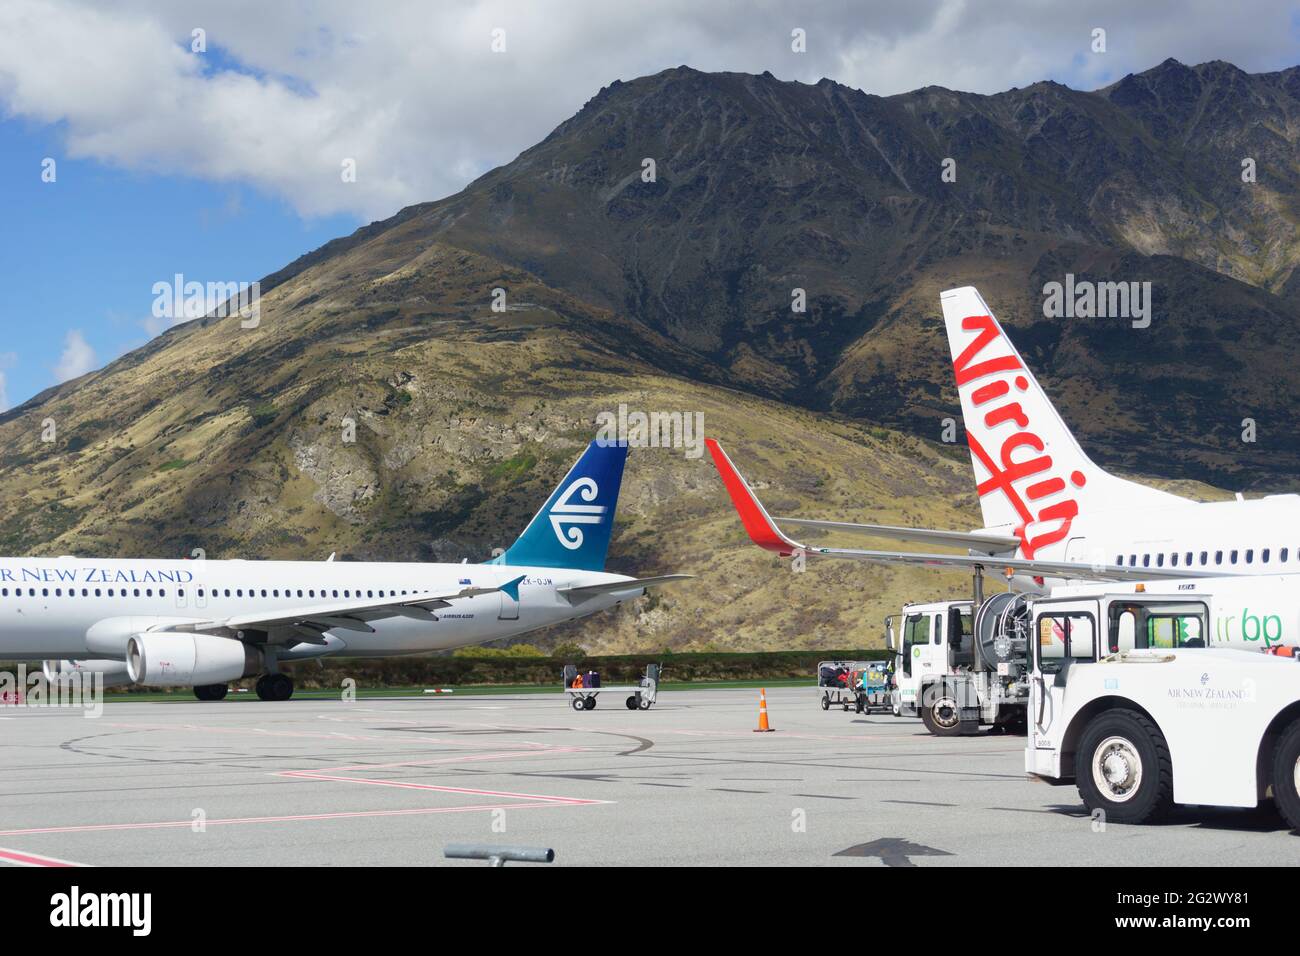 Queenstown, Nouvelle-Zélande - mars 6 2015 ; les montagnes forment la toile de fond des avions garés à l'aéroport. Banque D'Images